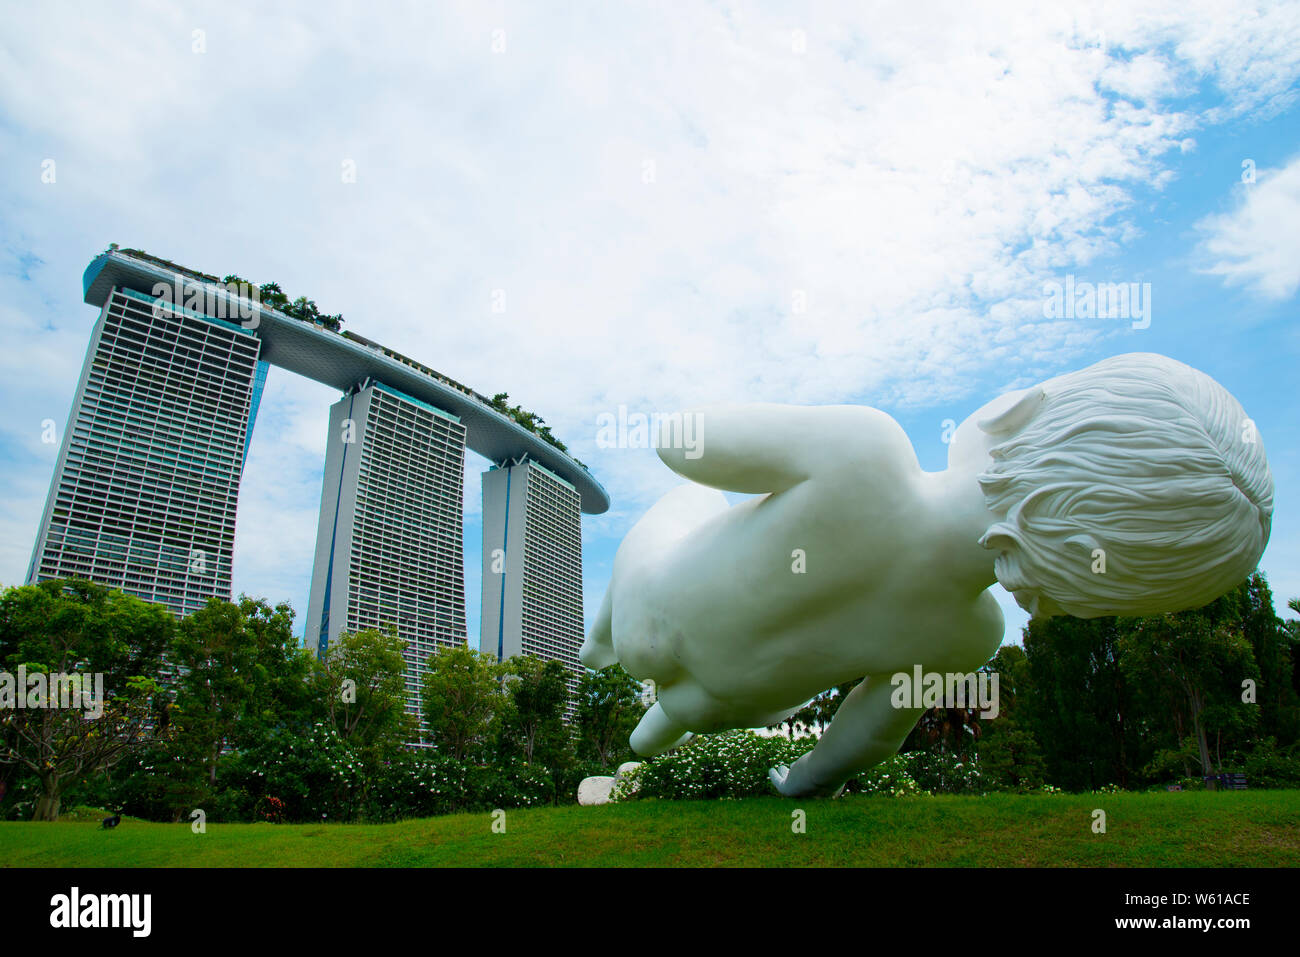 La ville de Singapour, Singapour - 12 Avril 2019 : 'Planet' sculpture est un grand bébé flotte dans l'air créé par Marc Quinn Banque D'Images